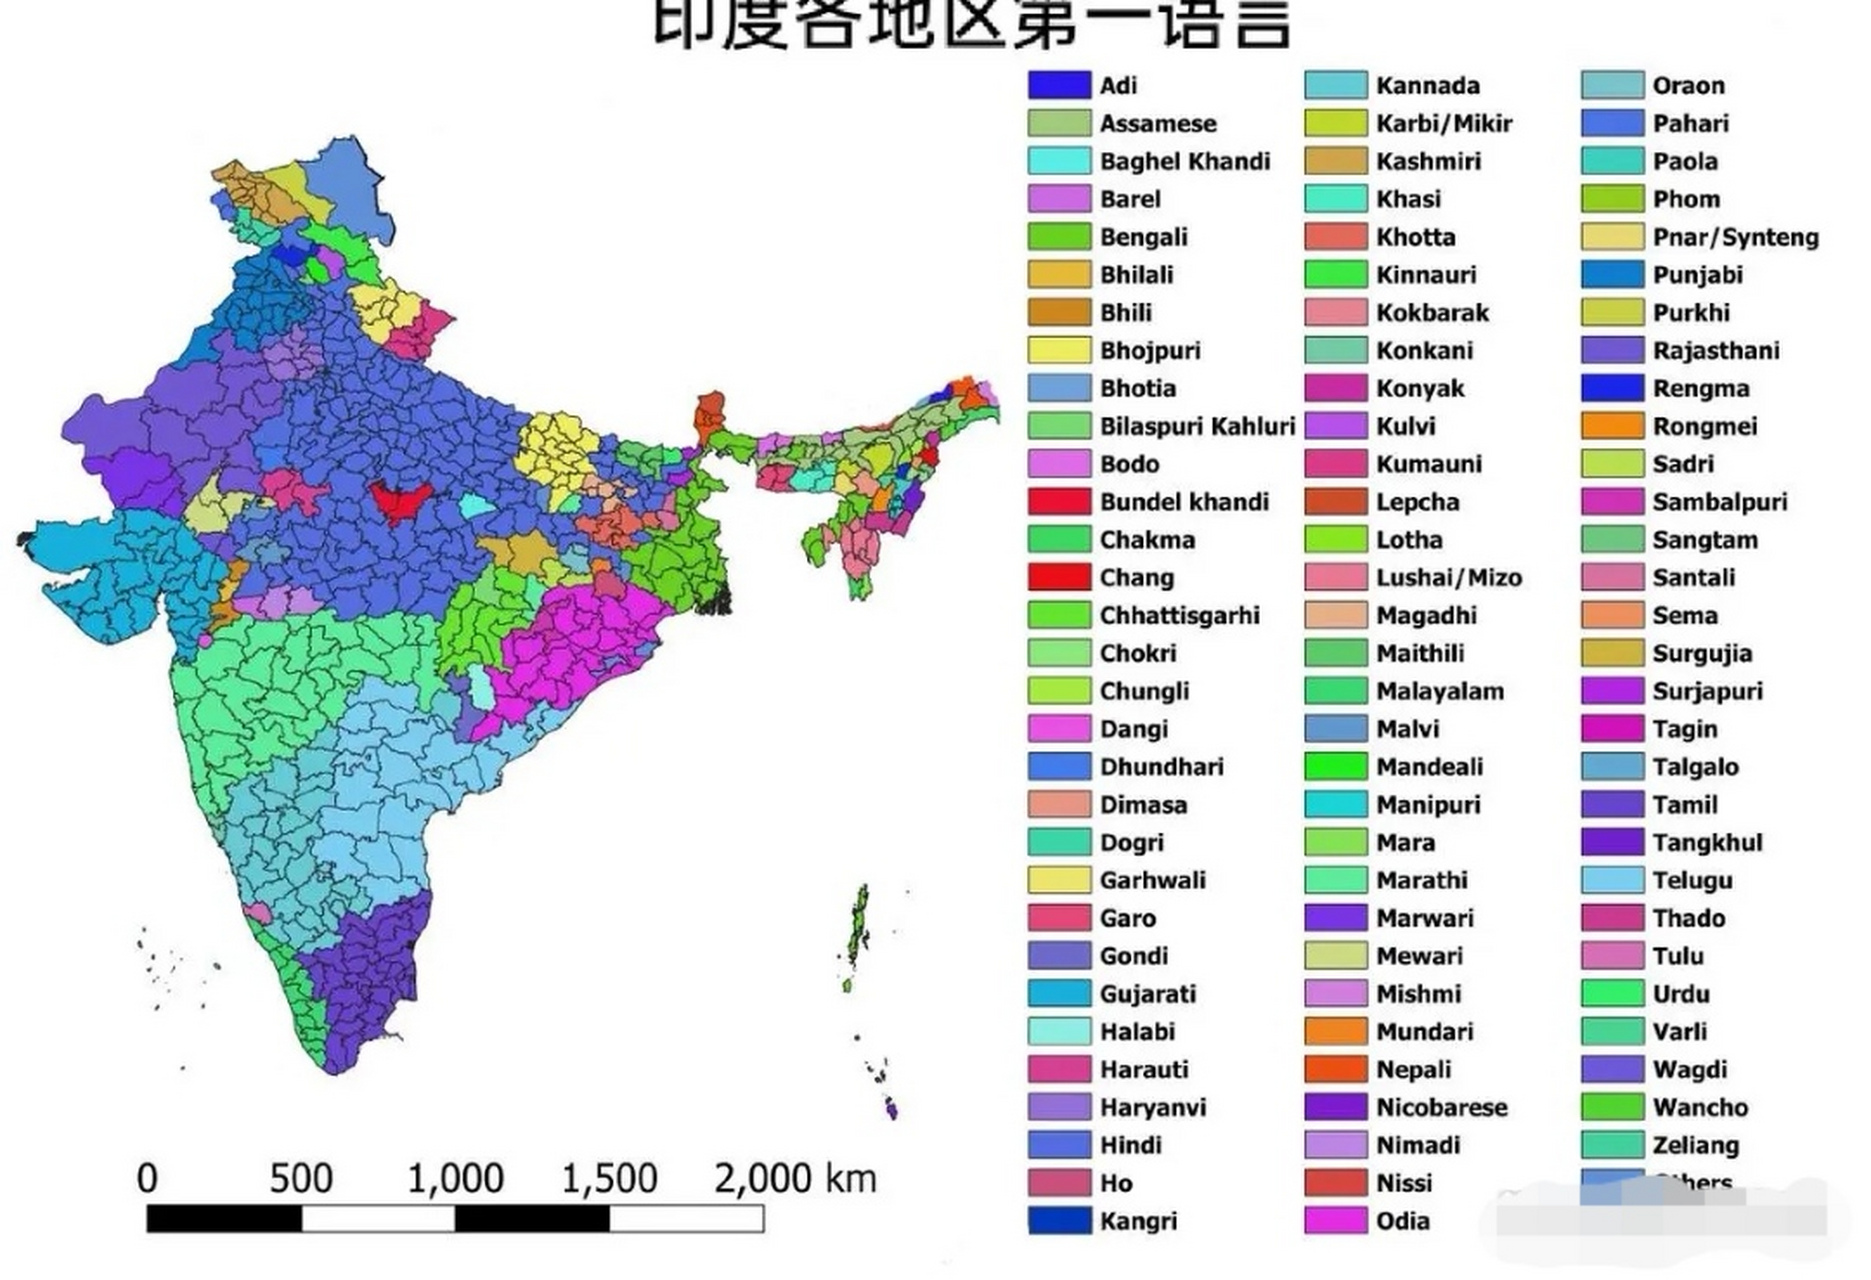 网友表示,中国大部分地区的第一语言只有一种,但印度却不太一样[左